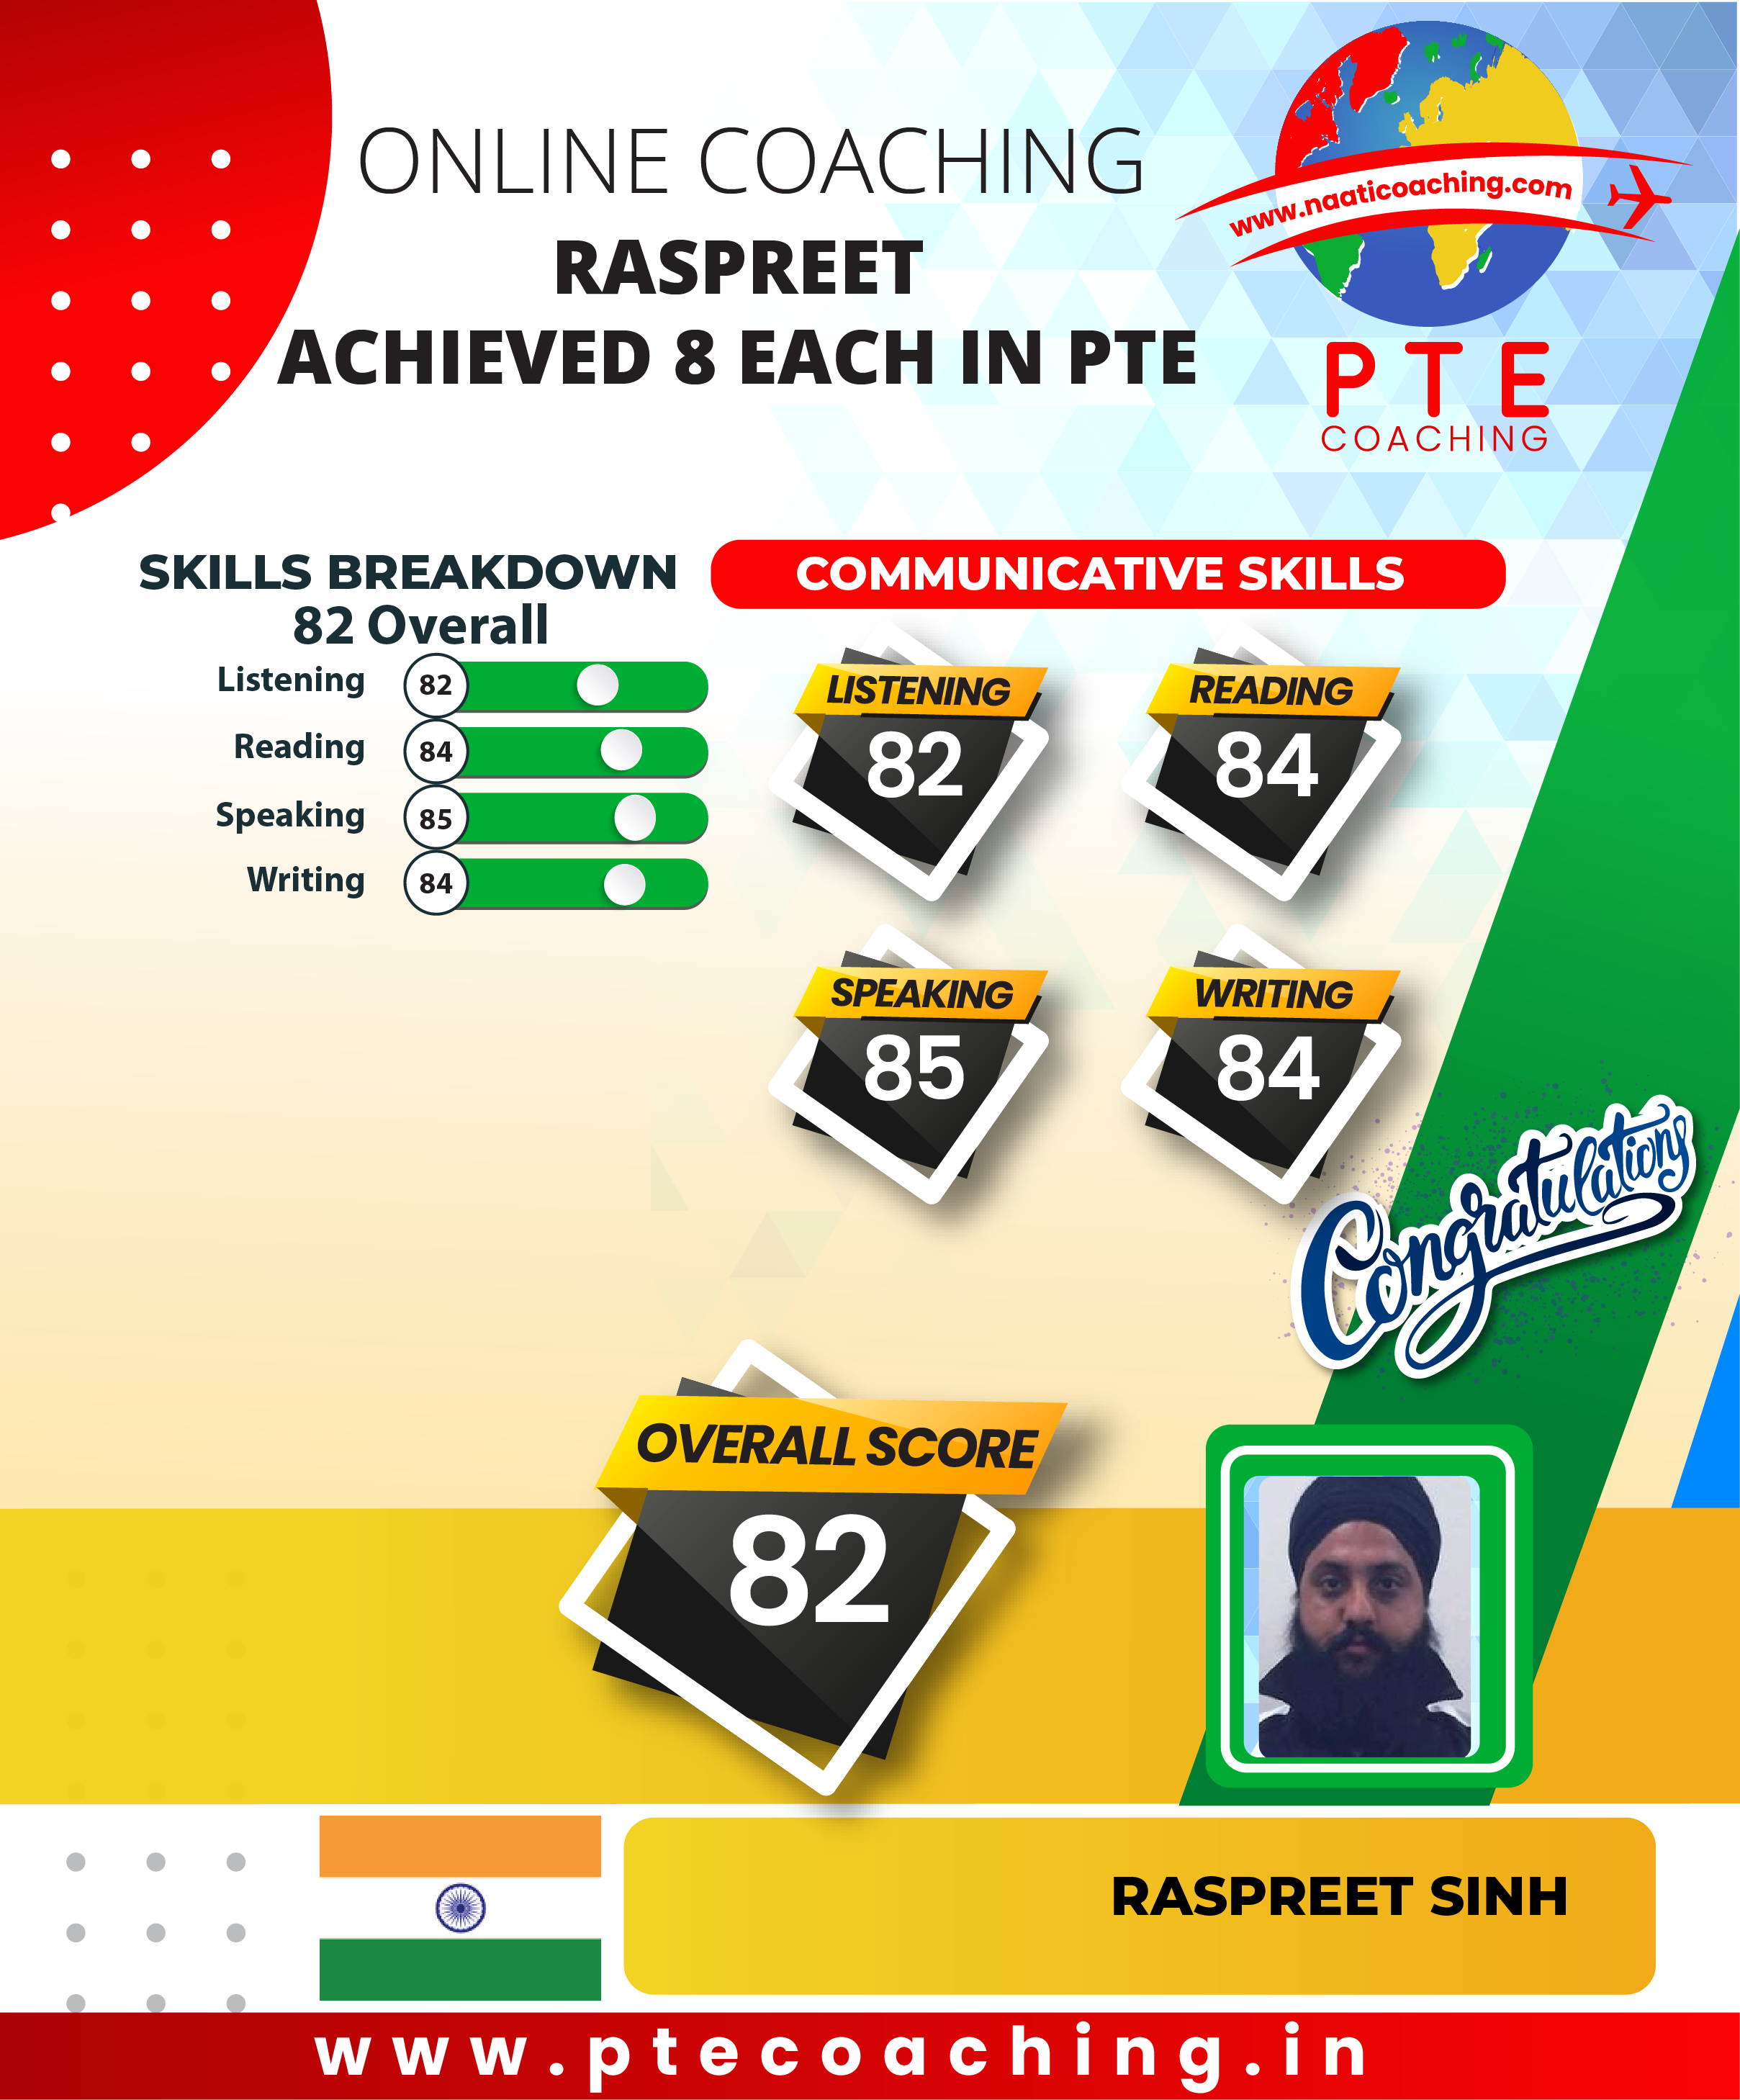 PTE Coaching Scorecard - Raspreet achieved 8 each in PTE